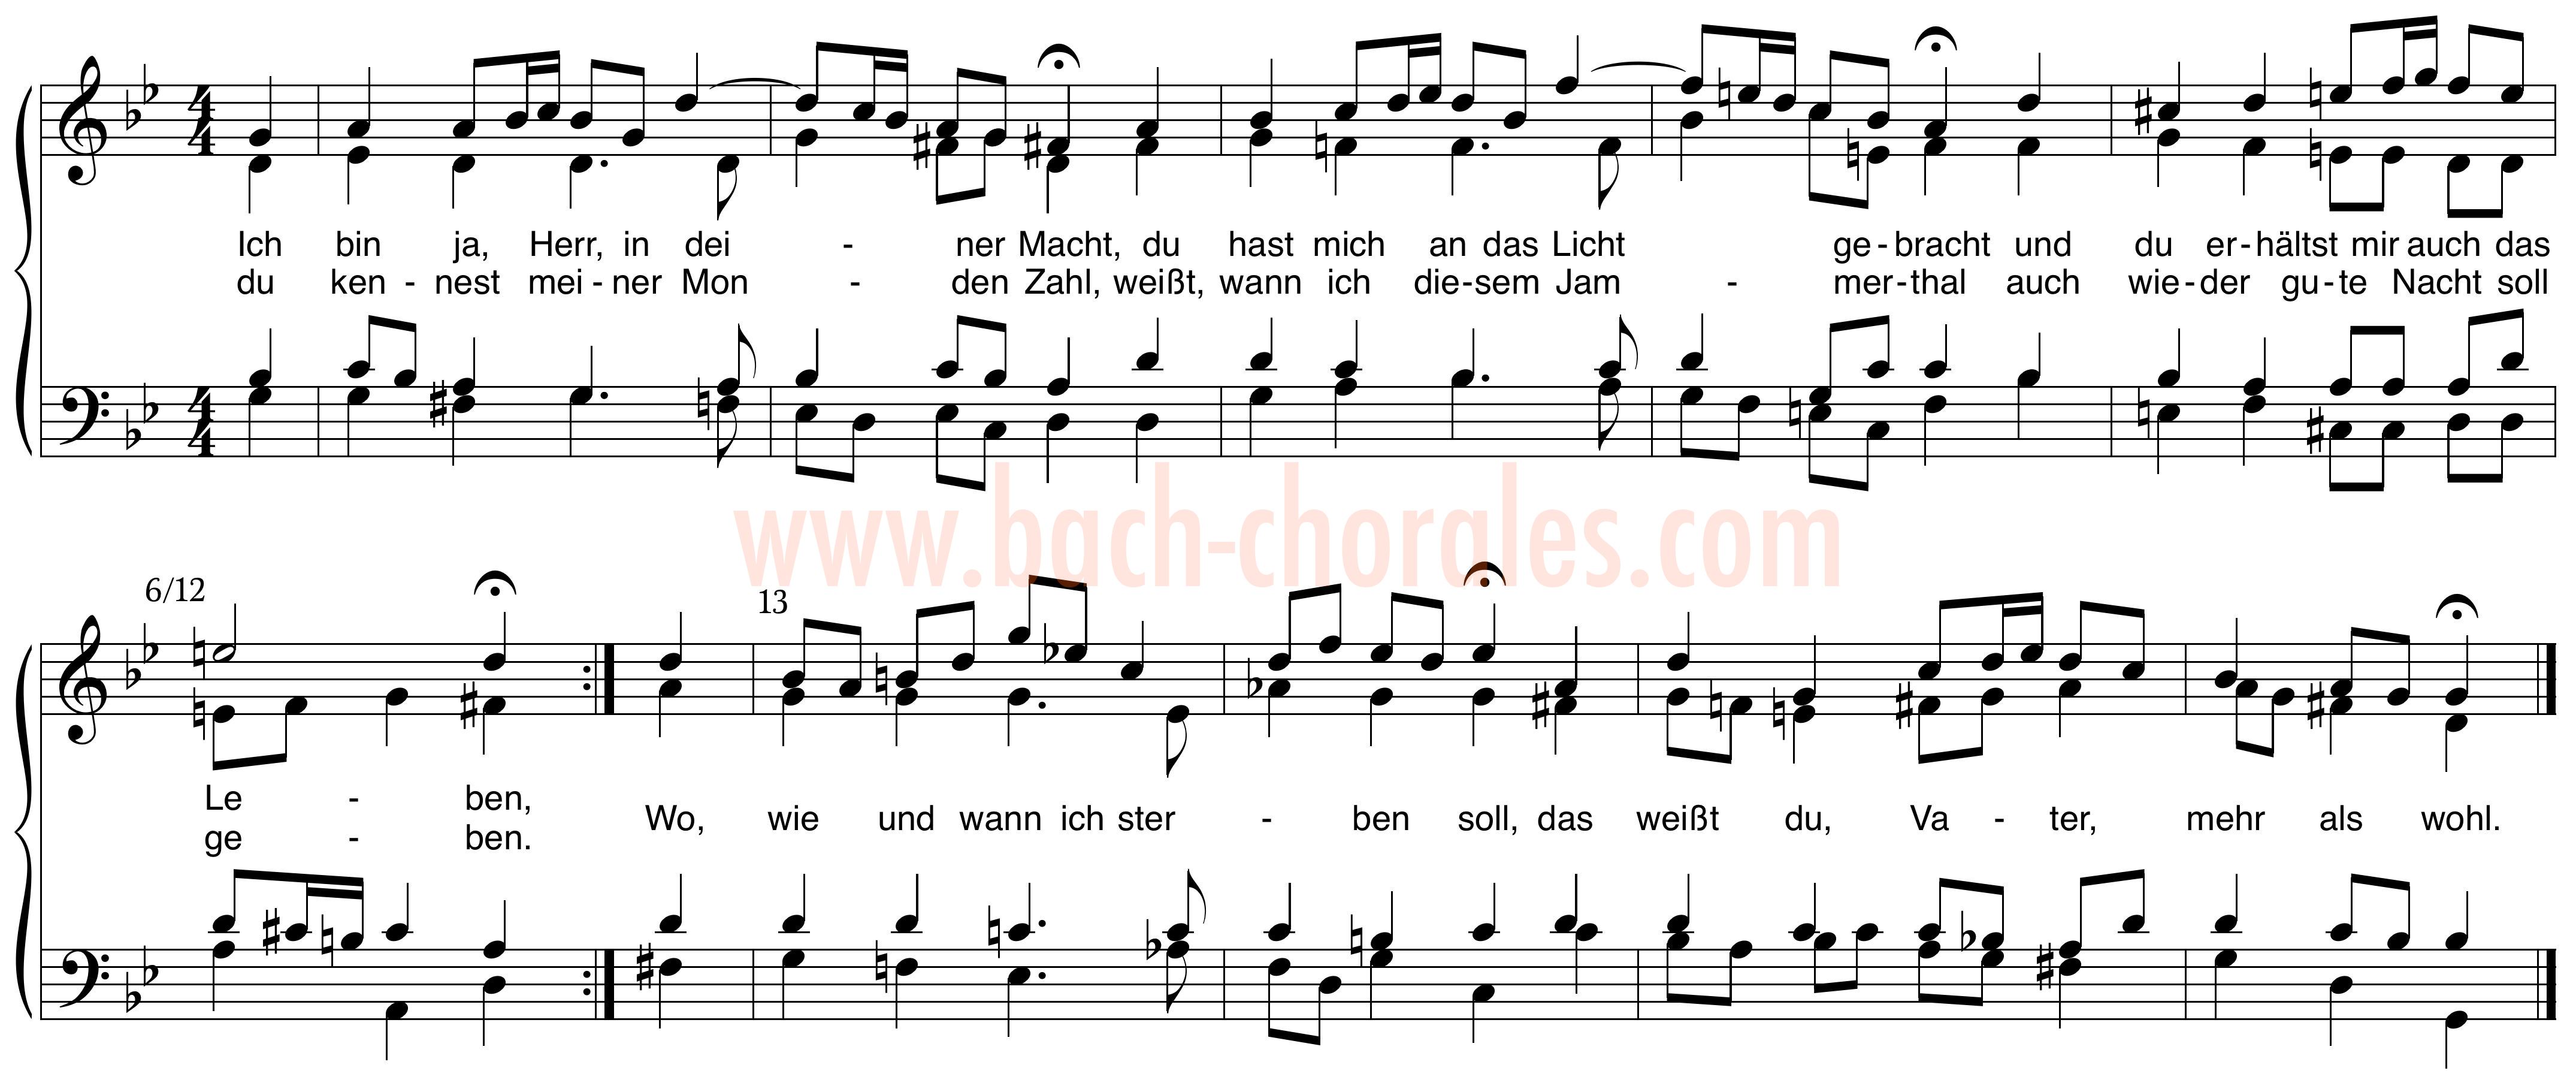 notenbeeld BWV 345 op https://www.bach-chorales.com/